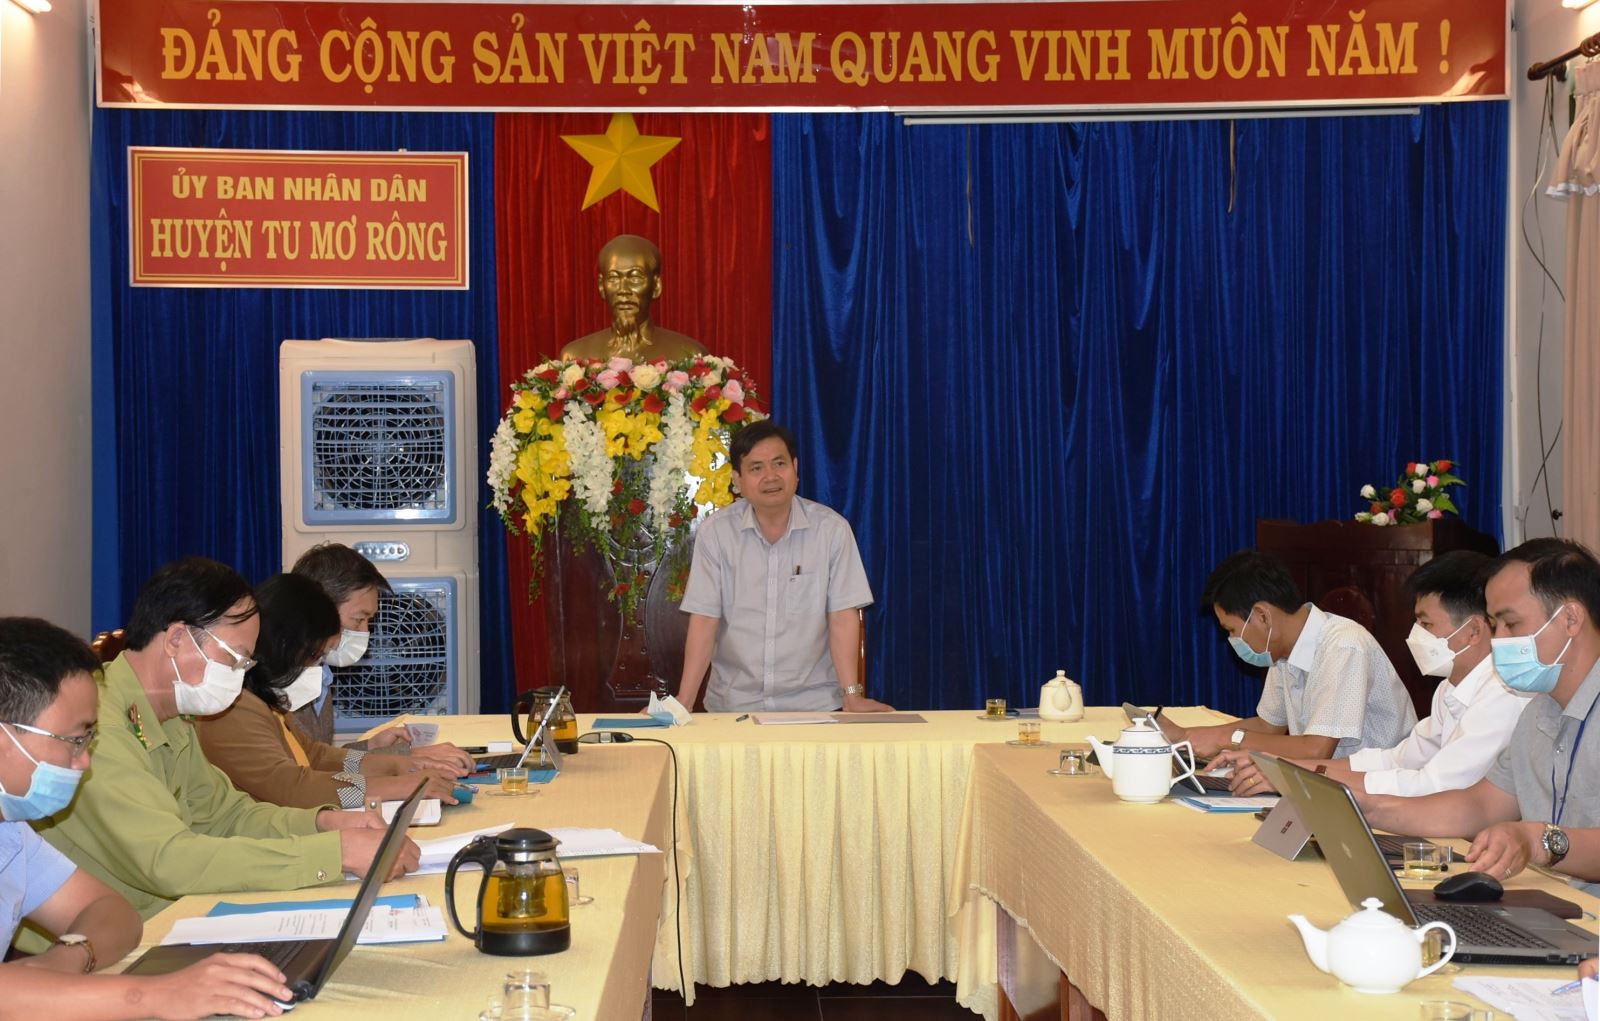 Trước đó ngày 19/4, đồng chí Nguyễn Hữu Tháp, Phó Chủ tịch UBND tỉnh đã đi kiểm tra thực tế và làm việc với UBND huyện Tu Mơ Rông công tác chuẩn bị tổ chức Phiên chợ Sâm Ngọc Linh